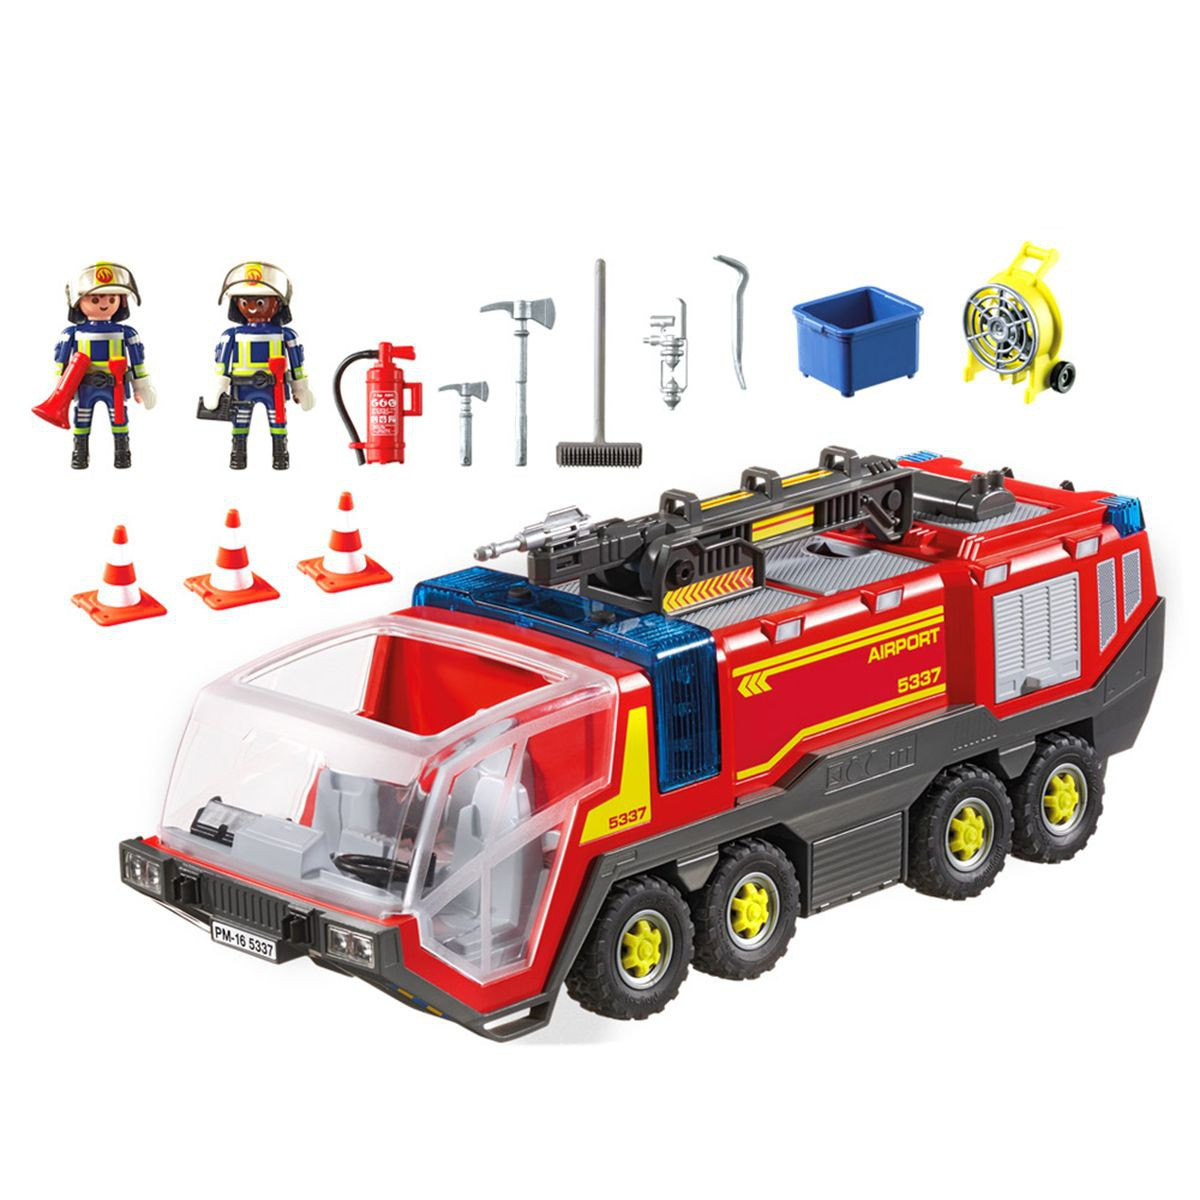 Playmobil Pompier Avec Vehicule Aeroportuaire intérieur Playmobil Voiture Pompier 